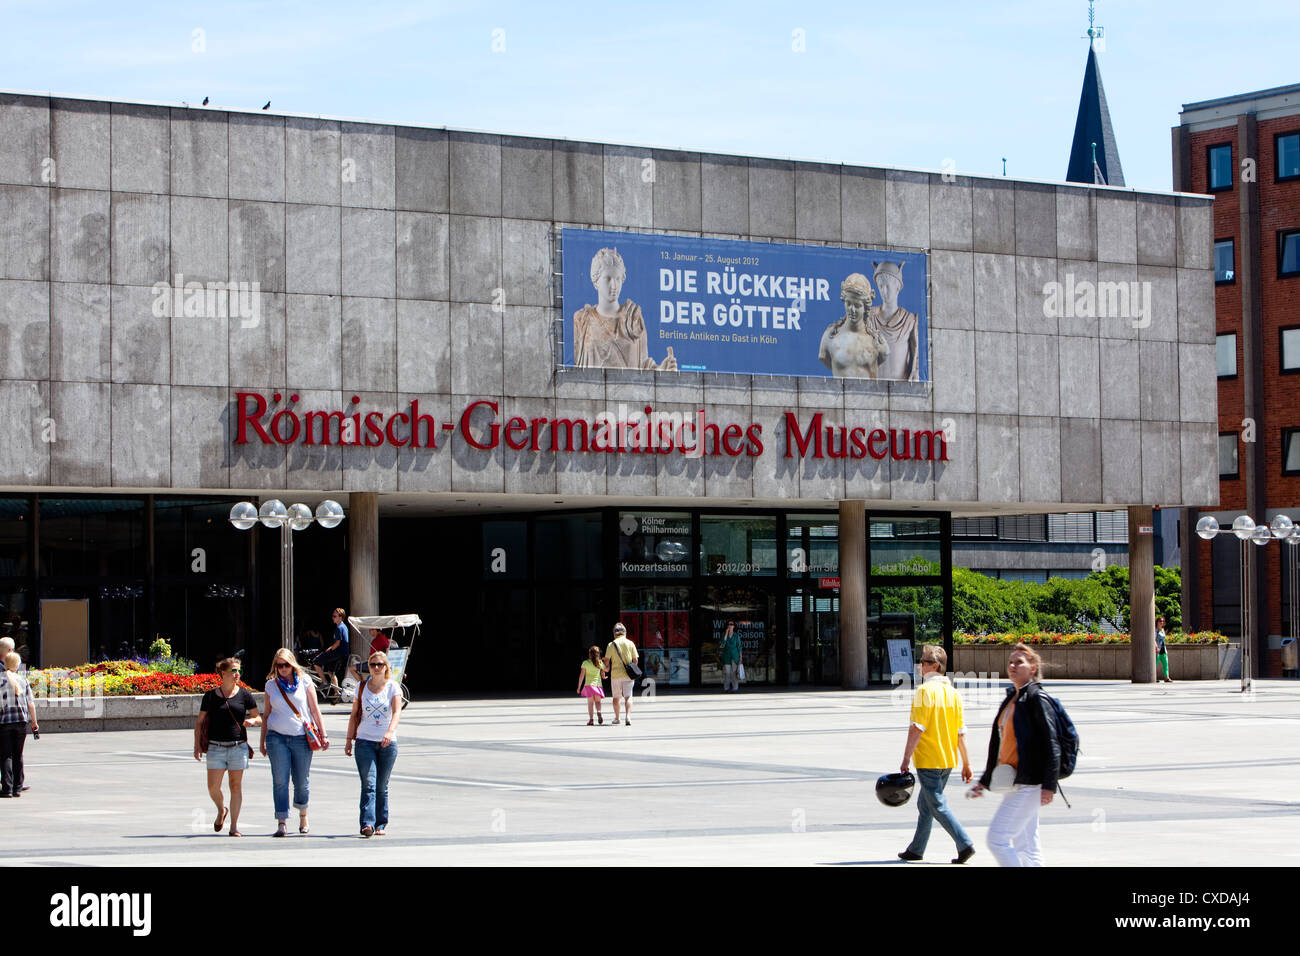 Museo Romano-germánico, Colonia, Renania del Norte-Westfalia, Alemania, Europa Foto de stock